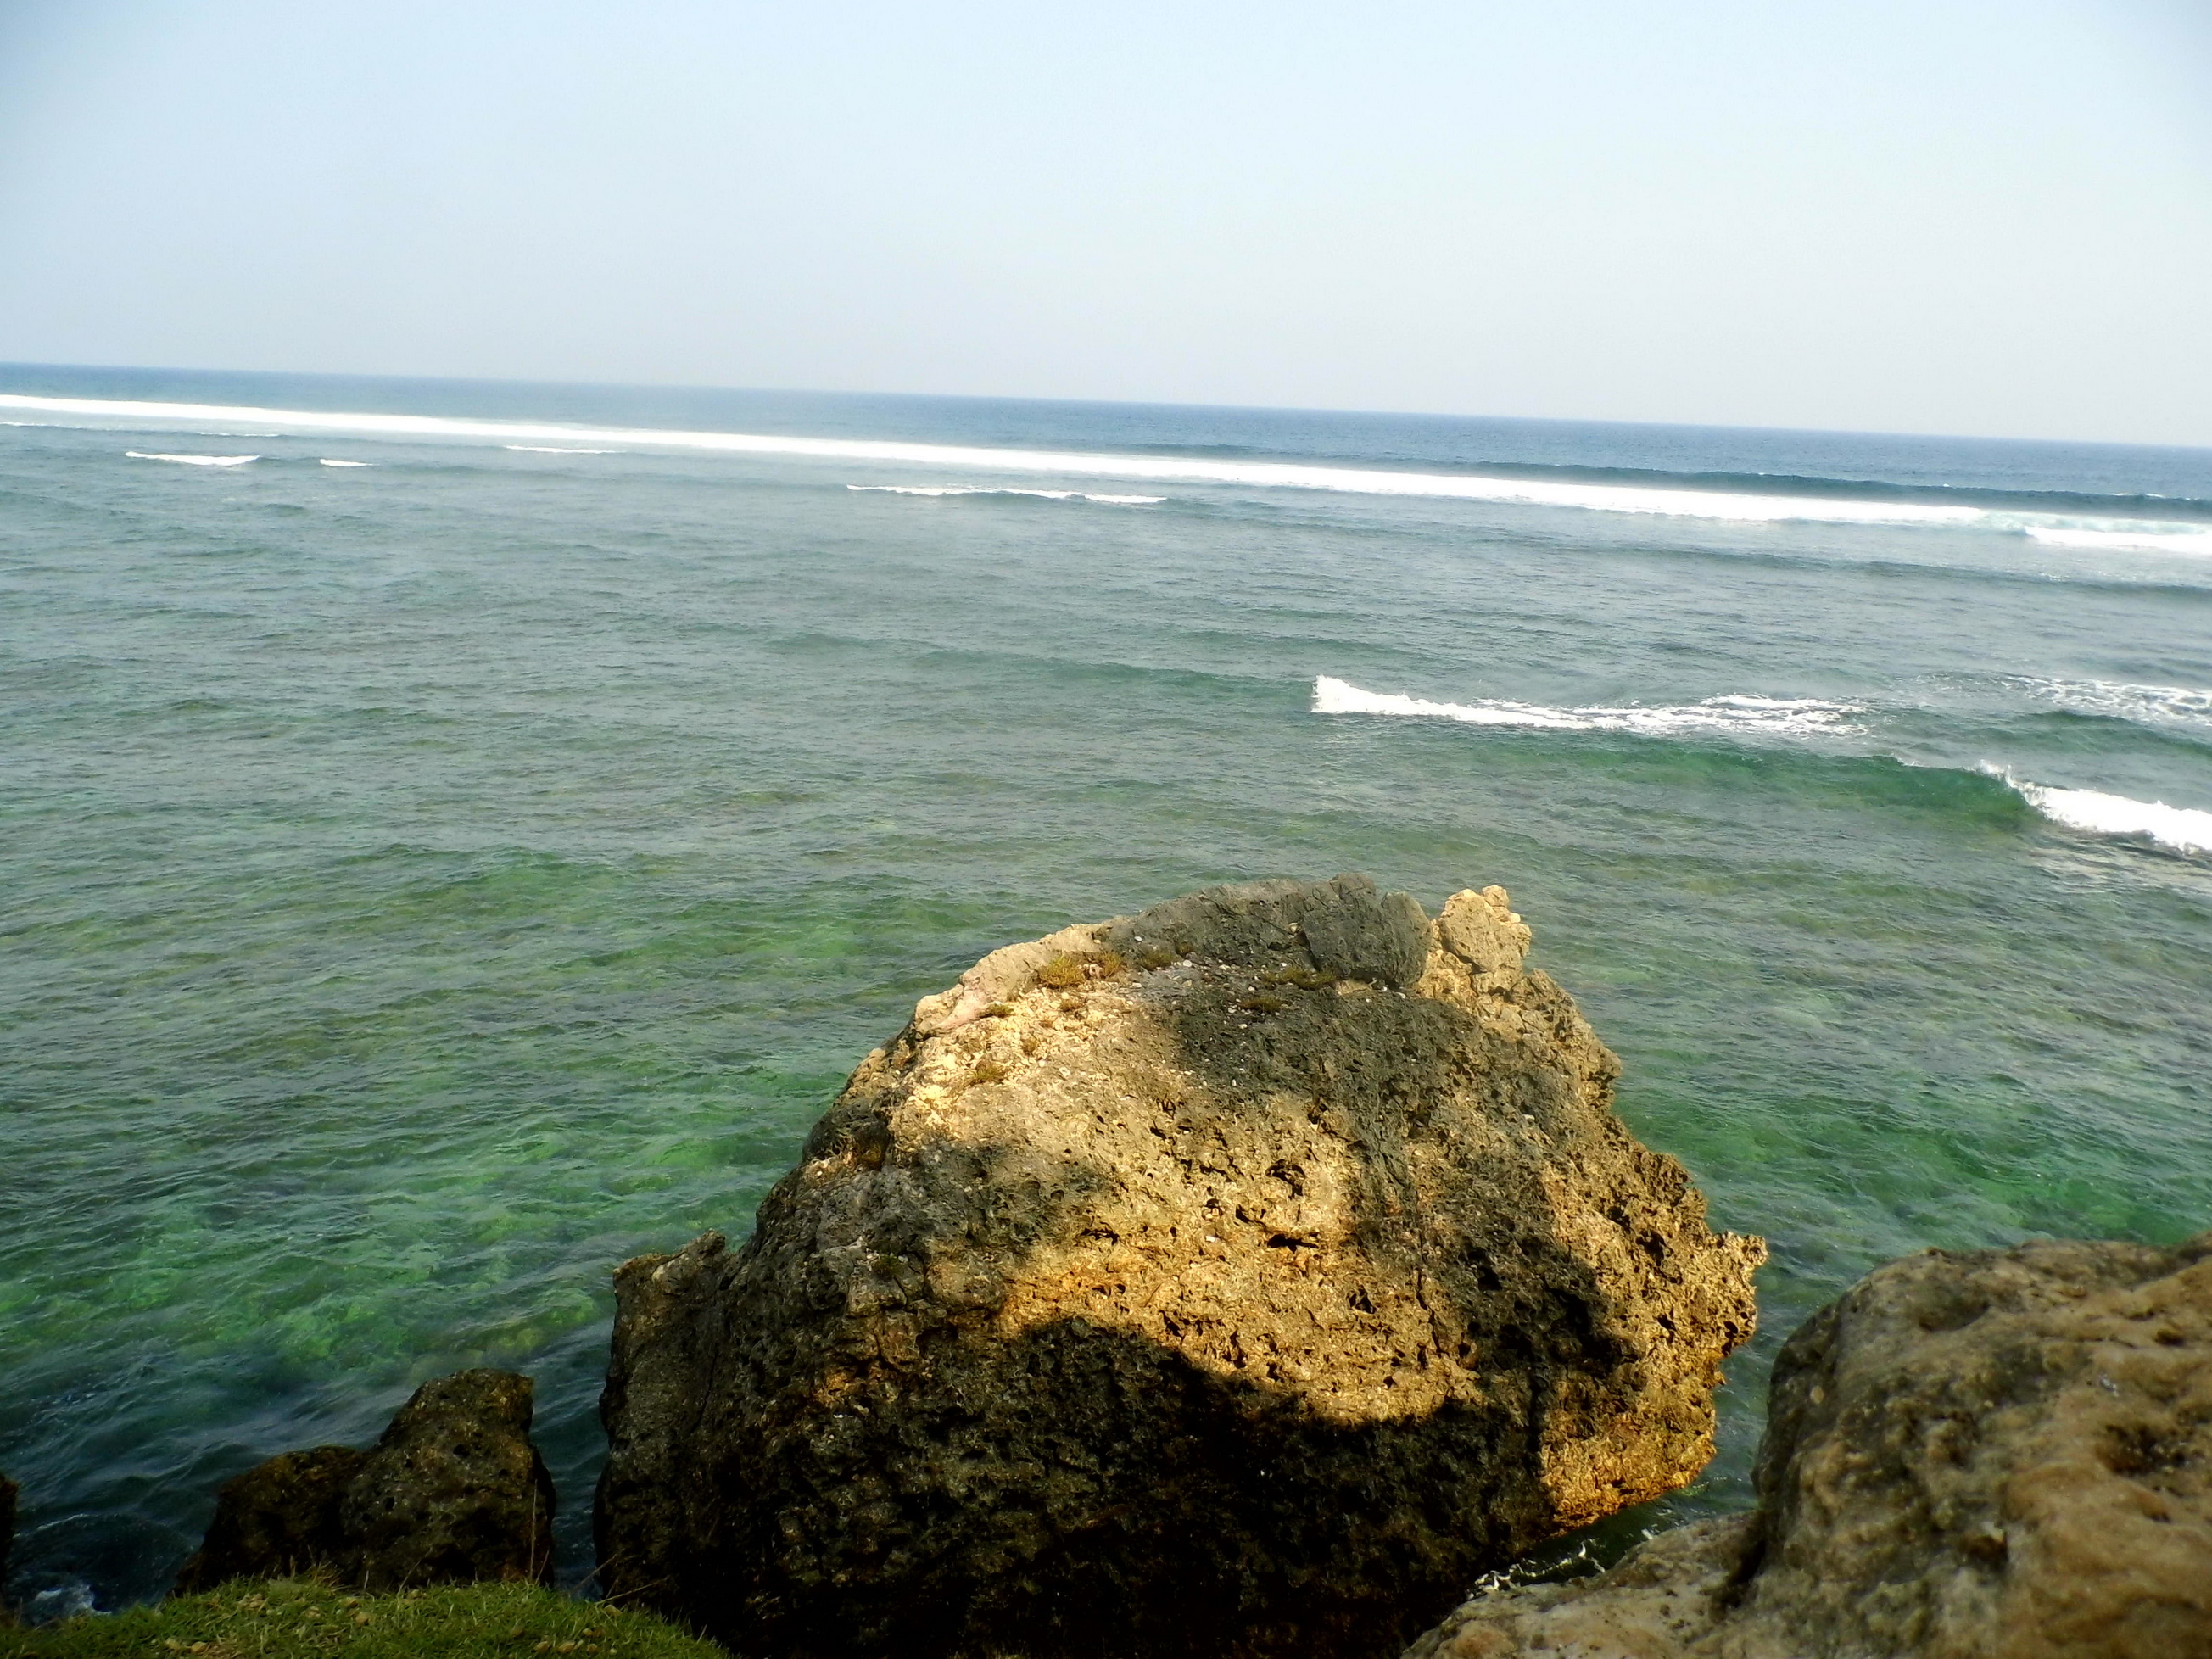 Gradasi air laut di Balekambang (c) Rizky Nusantara/Travelingyuk